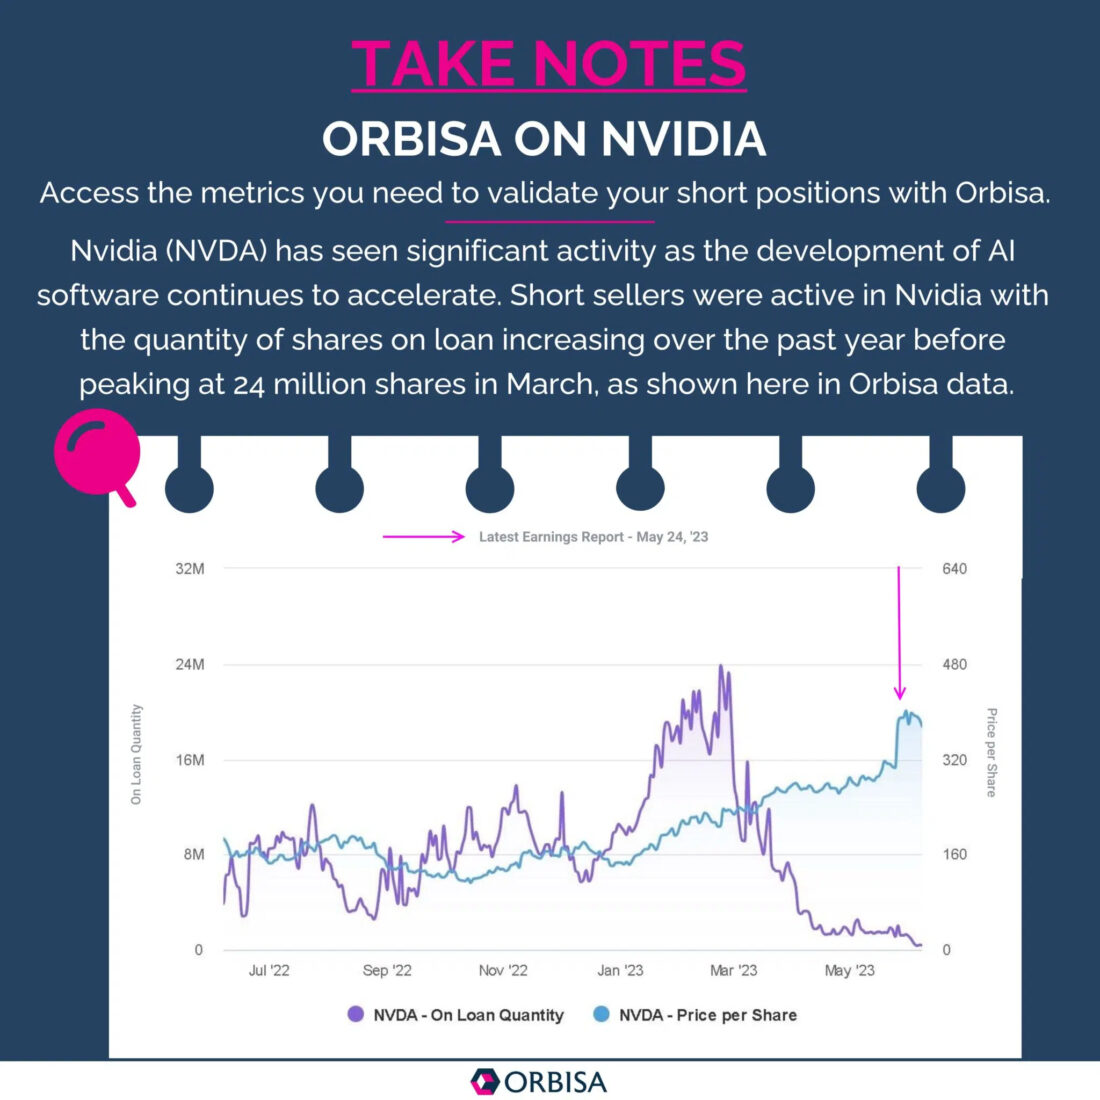 Orbisa on NVIDIA